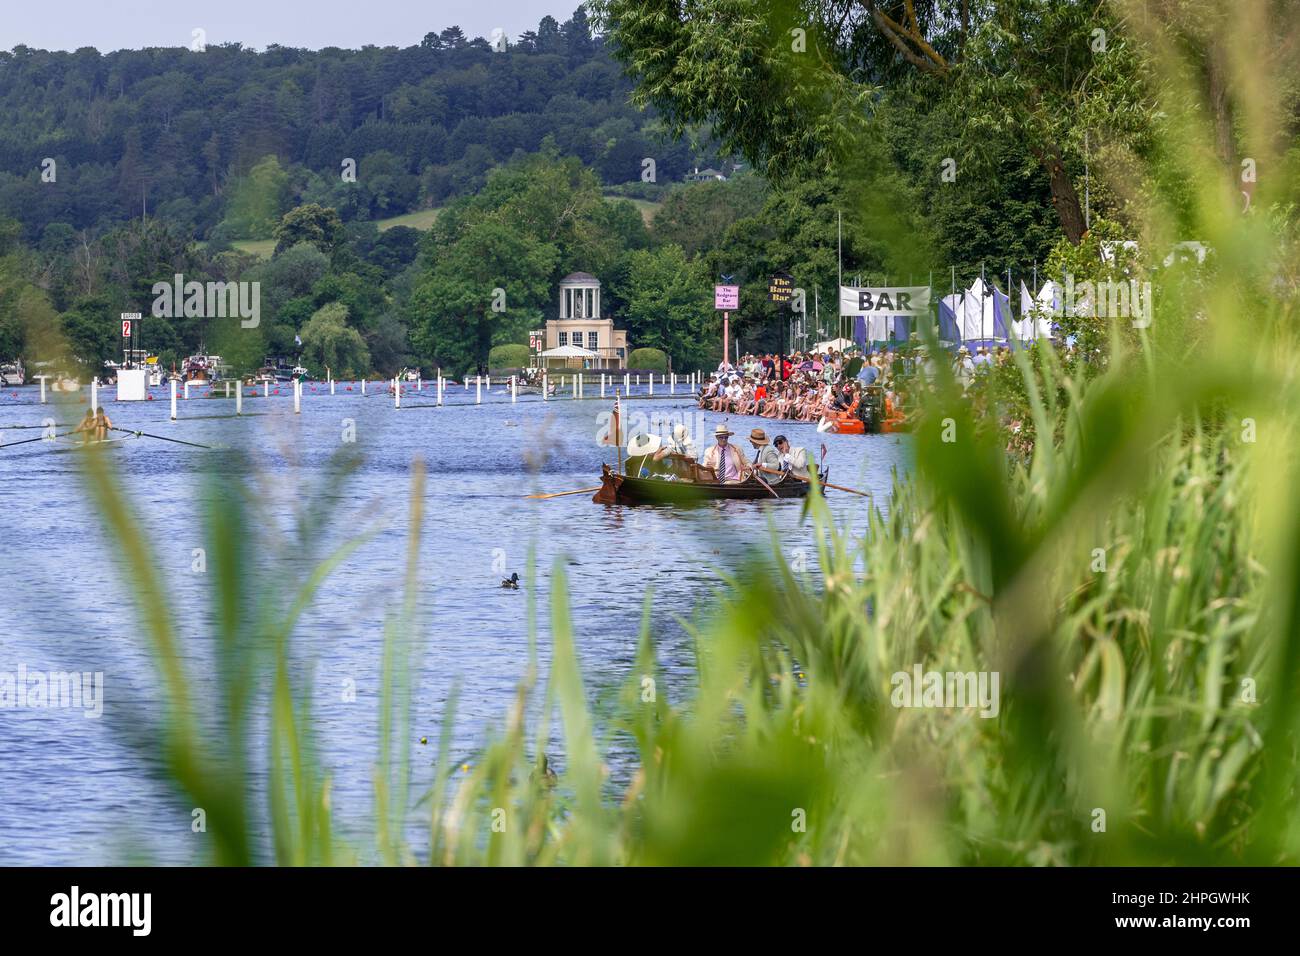 Il Tamigi con Temple Island in lontananza. Folle di spettatori costeggiano la riva del fiume per guardare la famosa regata di canottaggio. Henley-on-Thames, Inghilterra Foto Stock